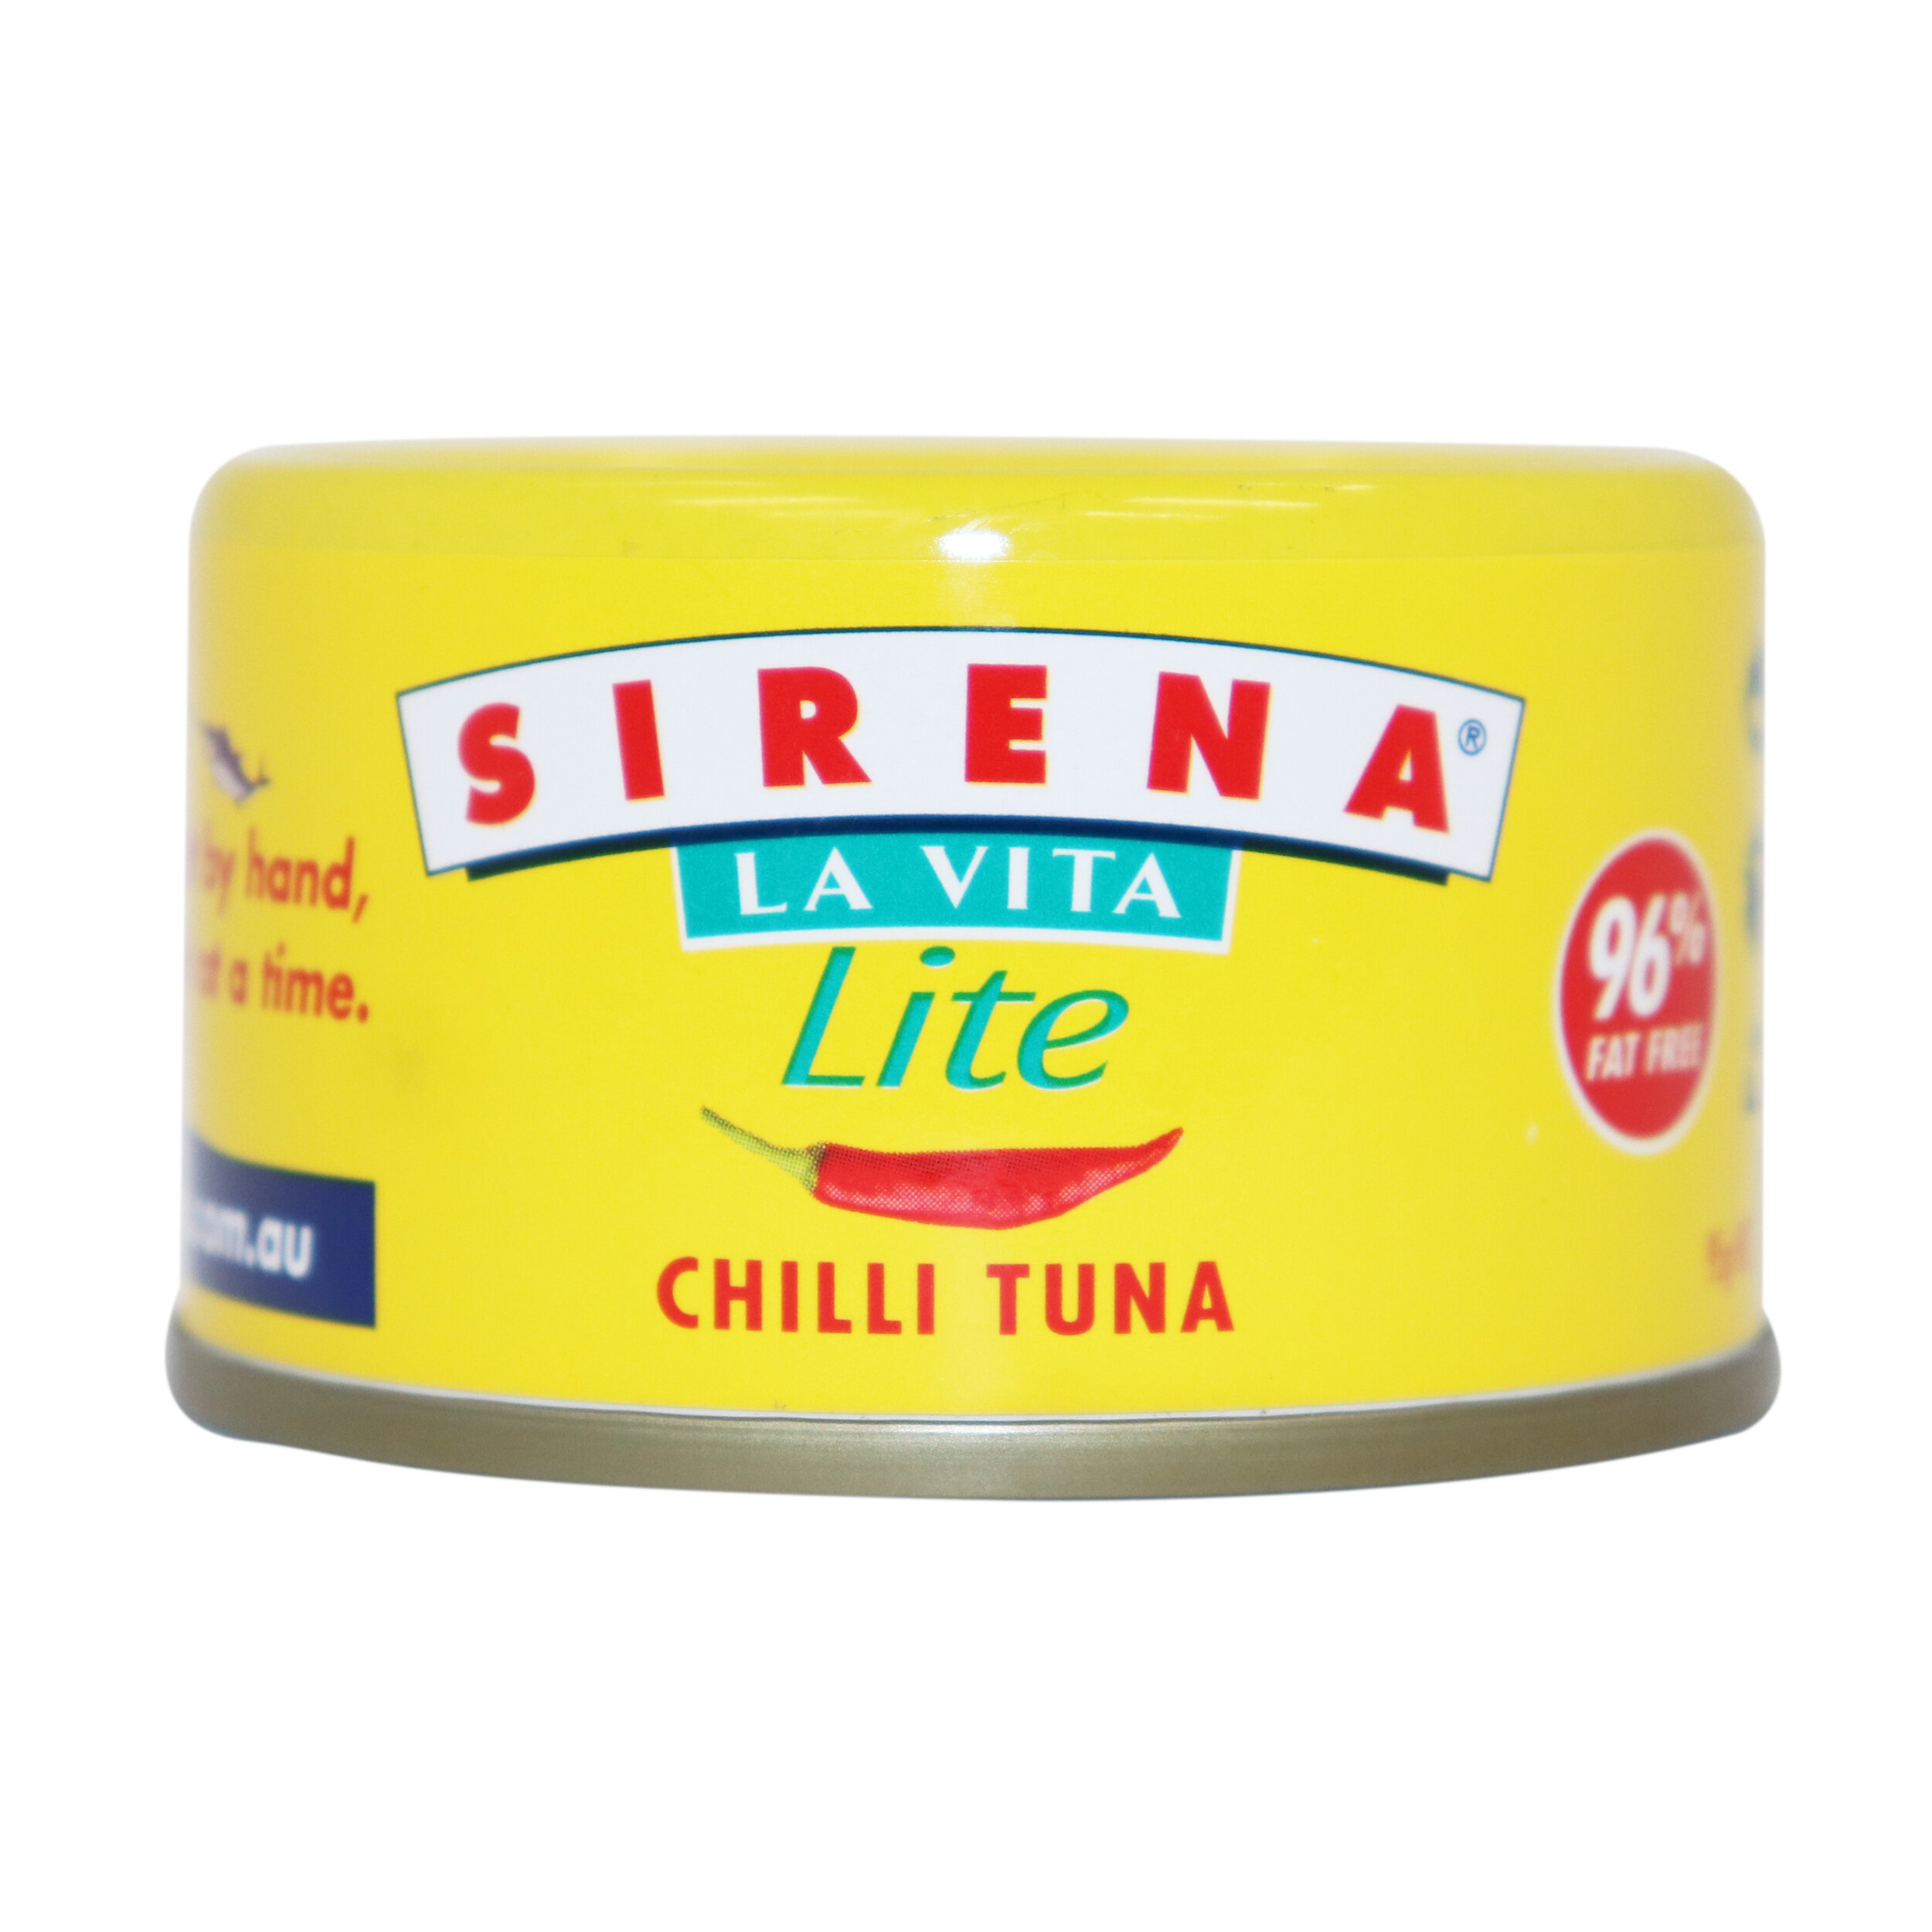 Sirena - SIR4895.jpg